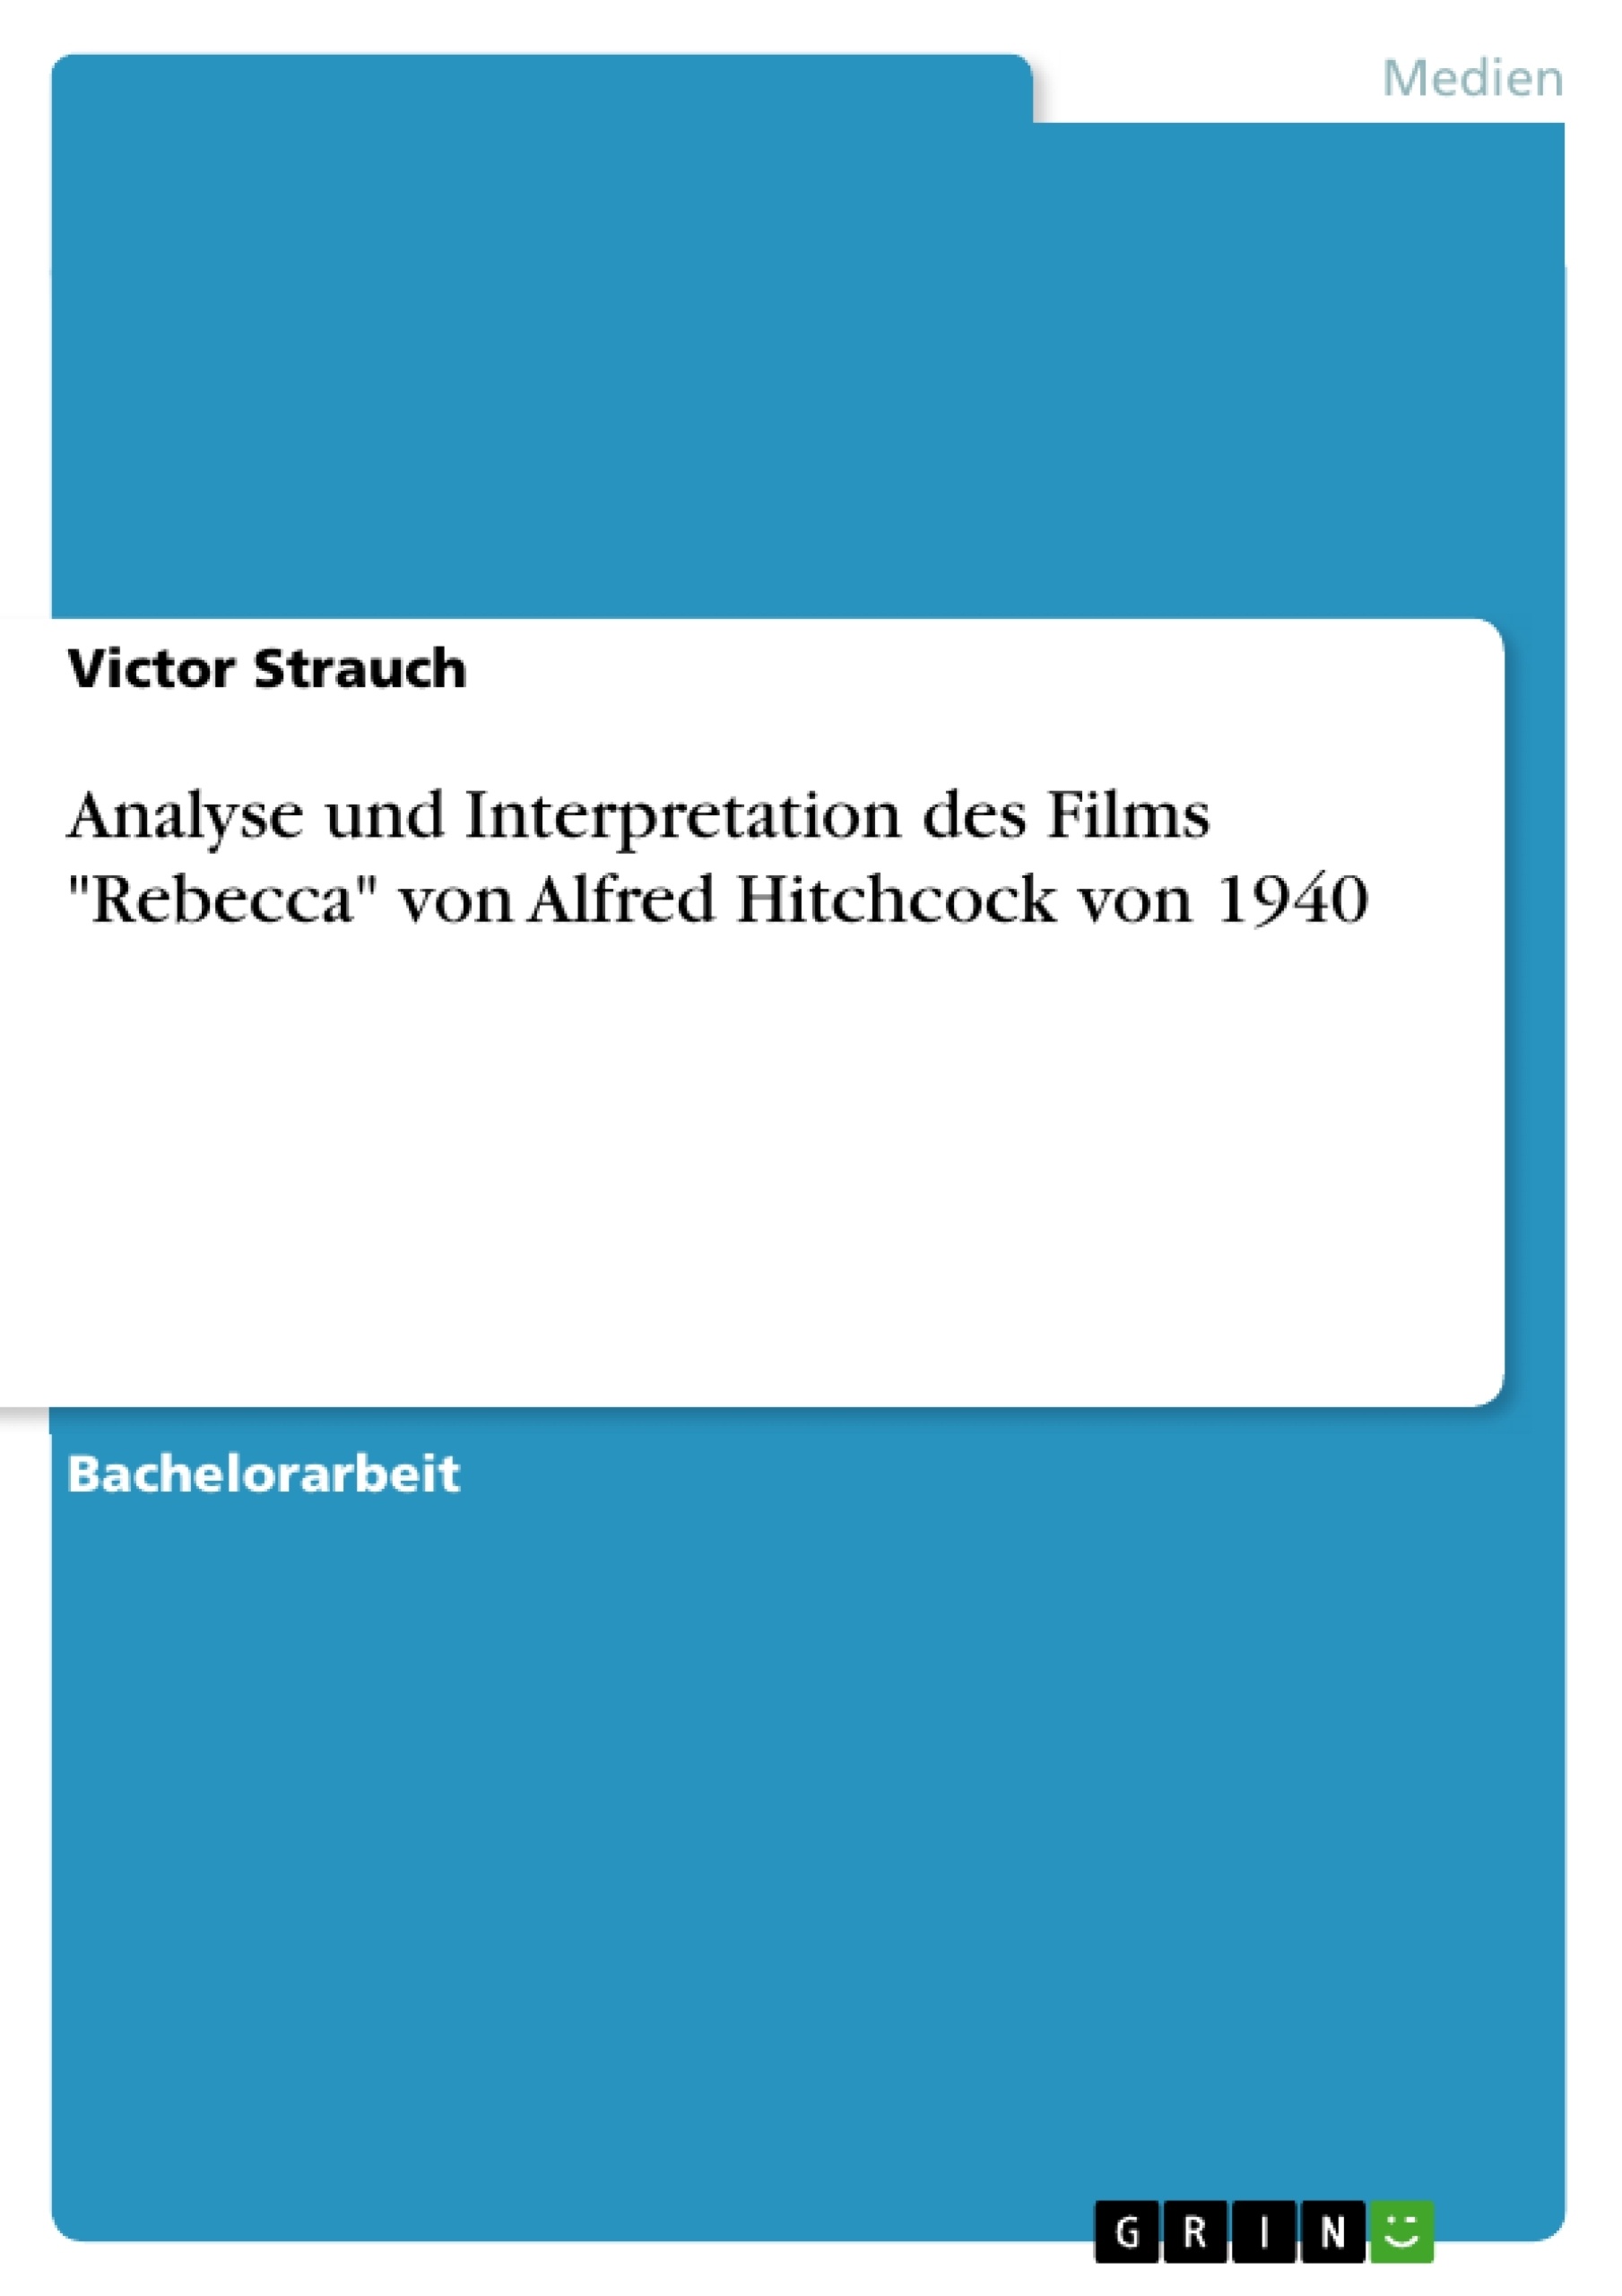 Título: Analyse und Interpretation des Films "Rebecca" von Alfred Hitchcock von 1940